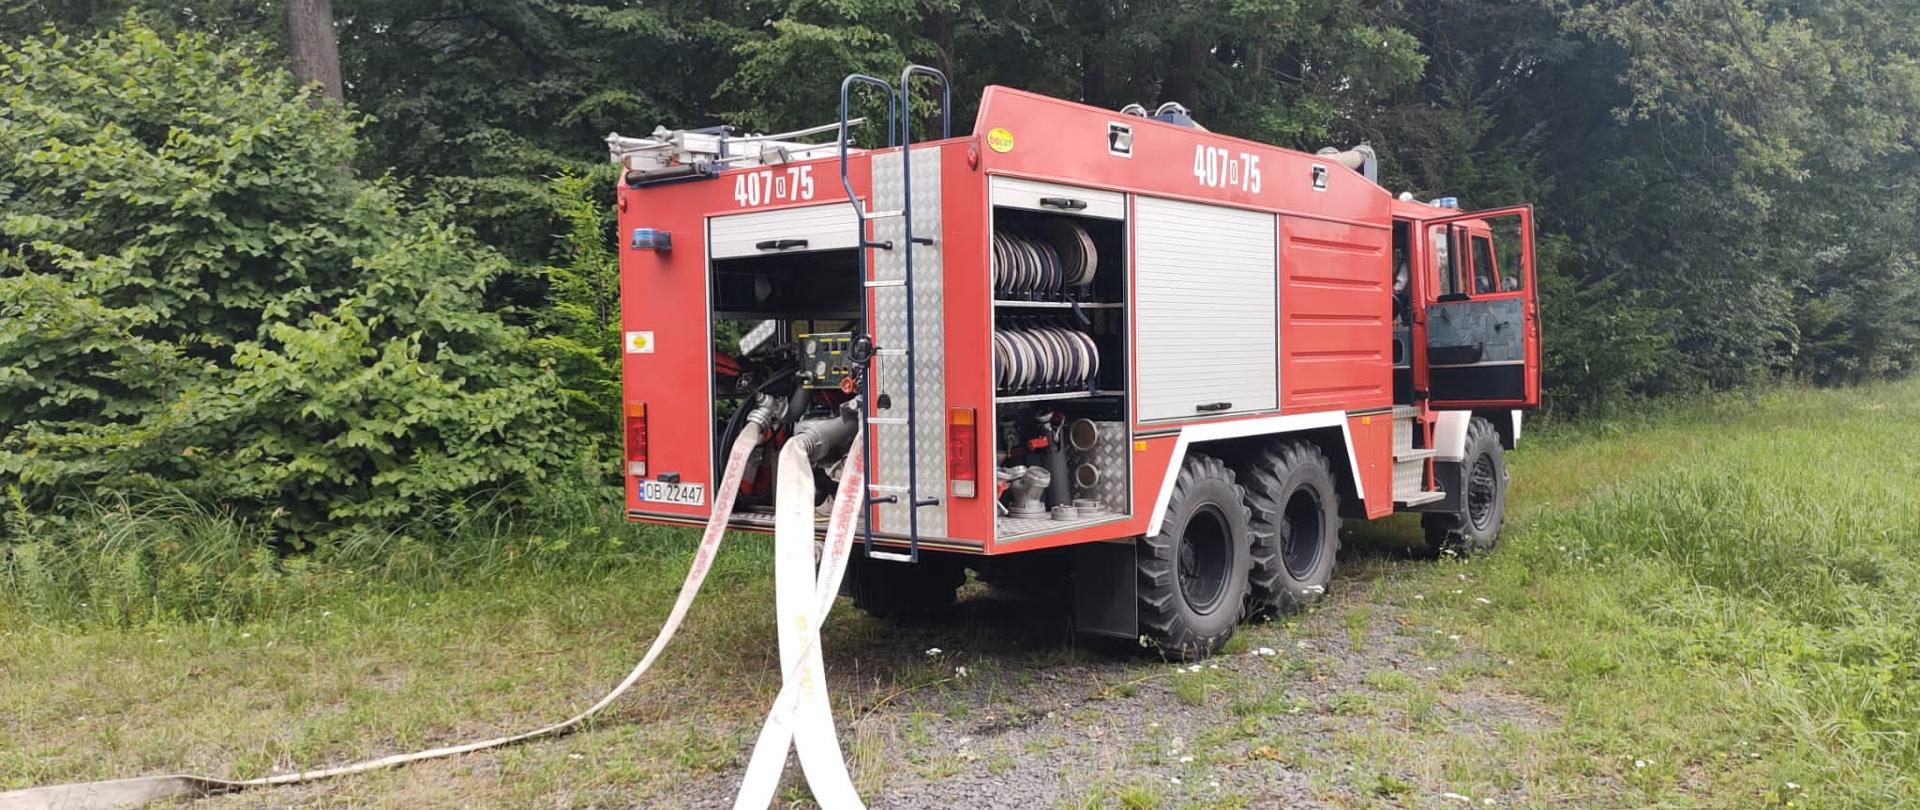 Ćwiczenia jednostek ochrony przeciwpożarowej w lesie. Na zdjęciu czerwony samochód gaśniczy.